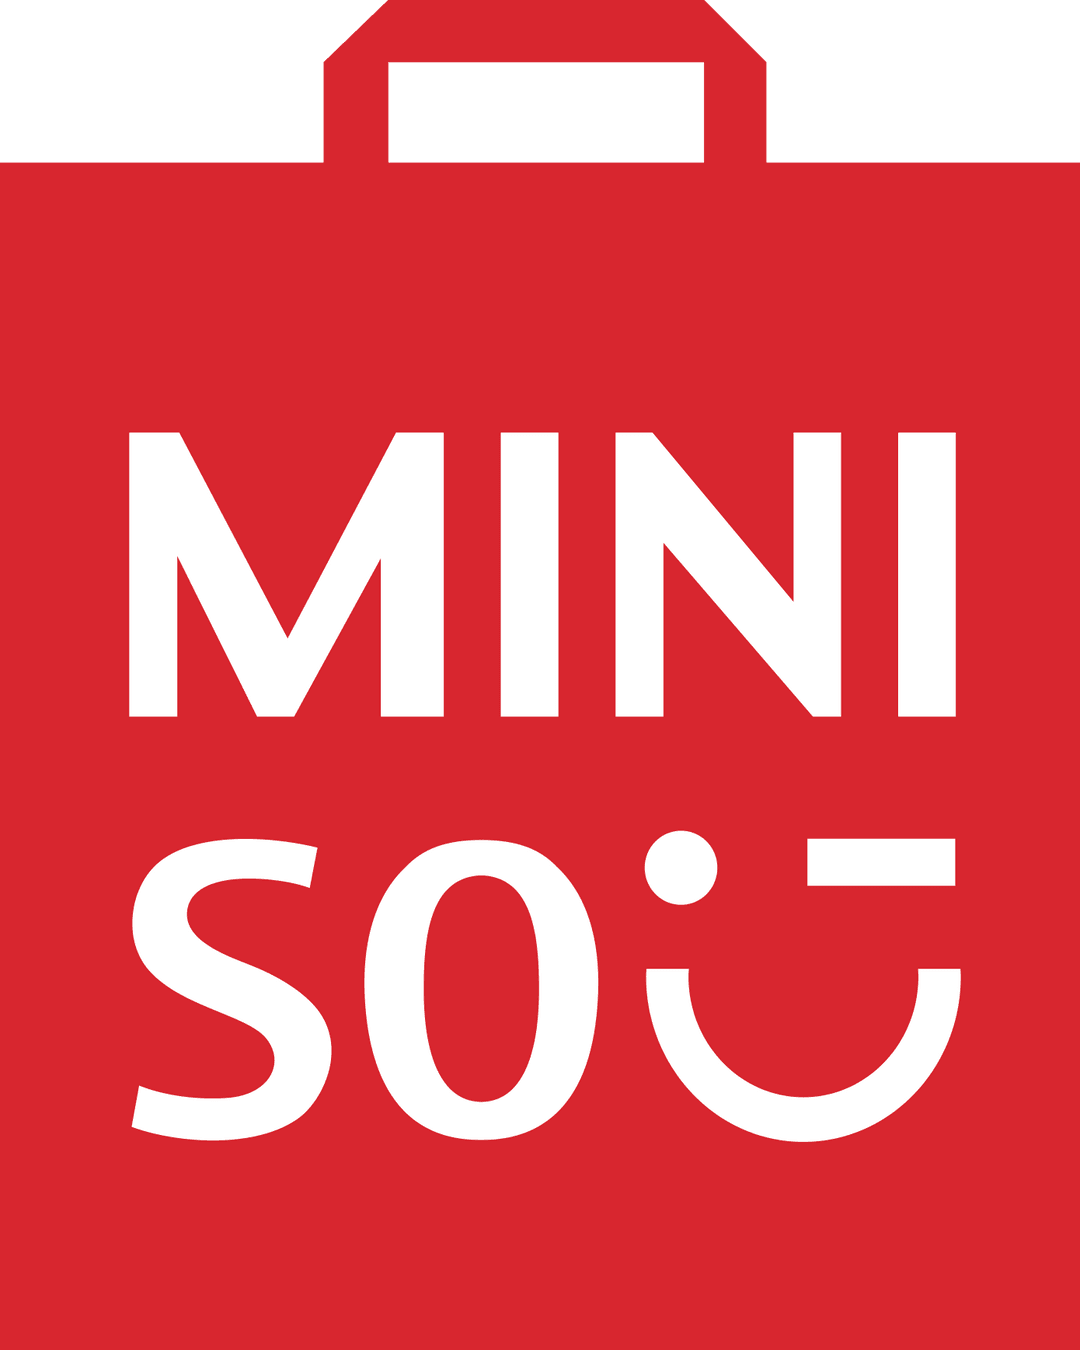 www.miniso.com.tr